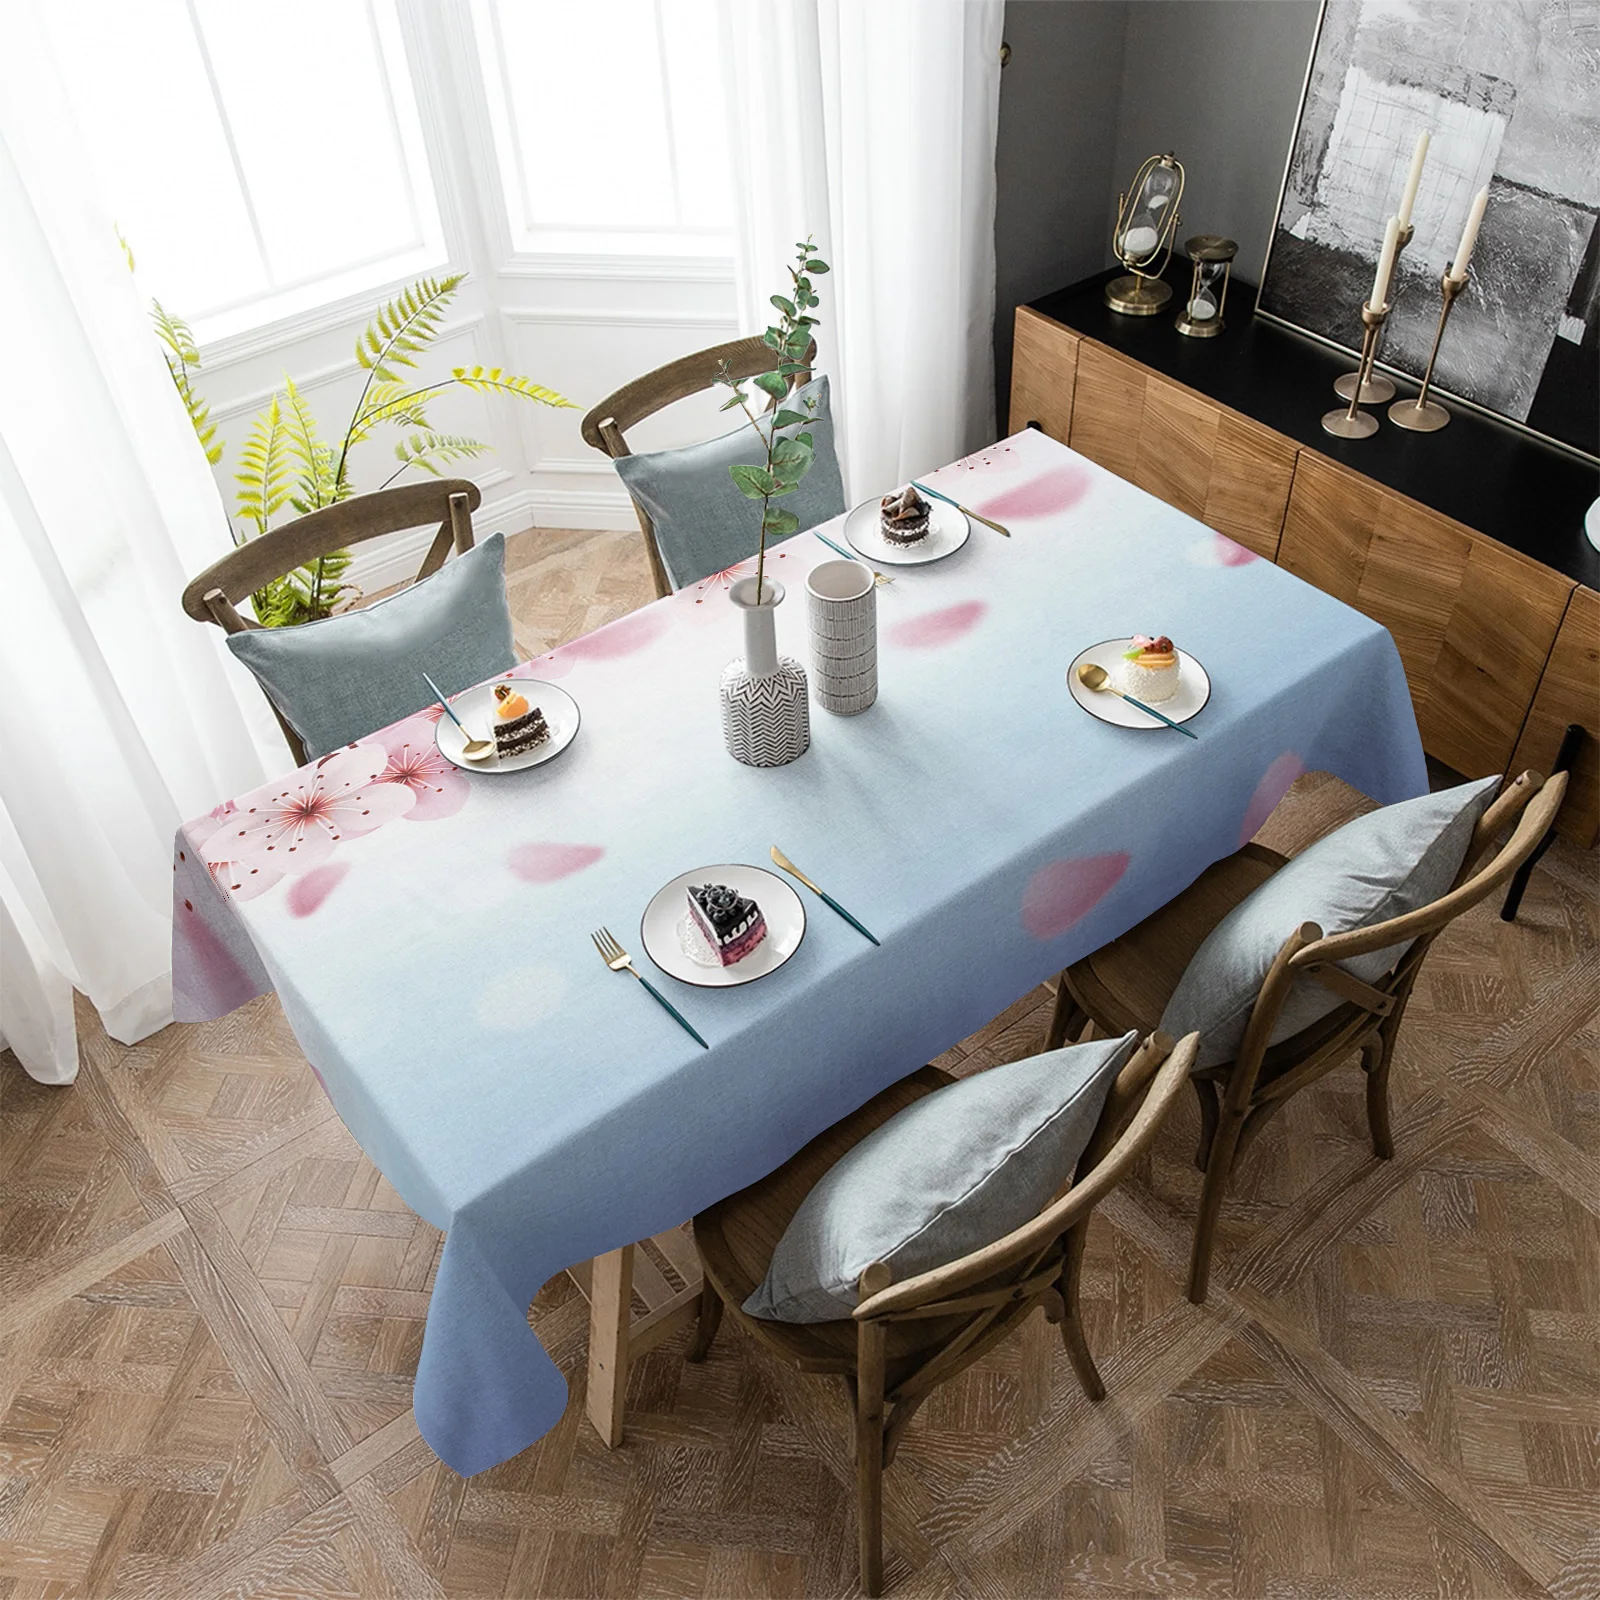 

Водонепроницаемая скатерть с градиентом, прямоугольное украшение для кухонного стола, вишневый цвет, весна